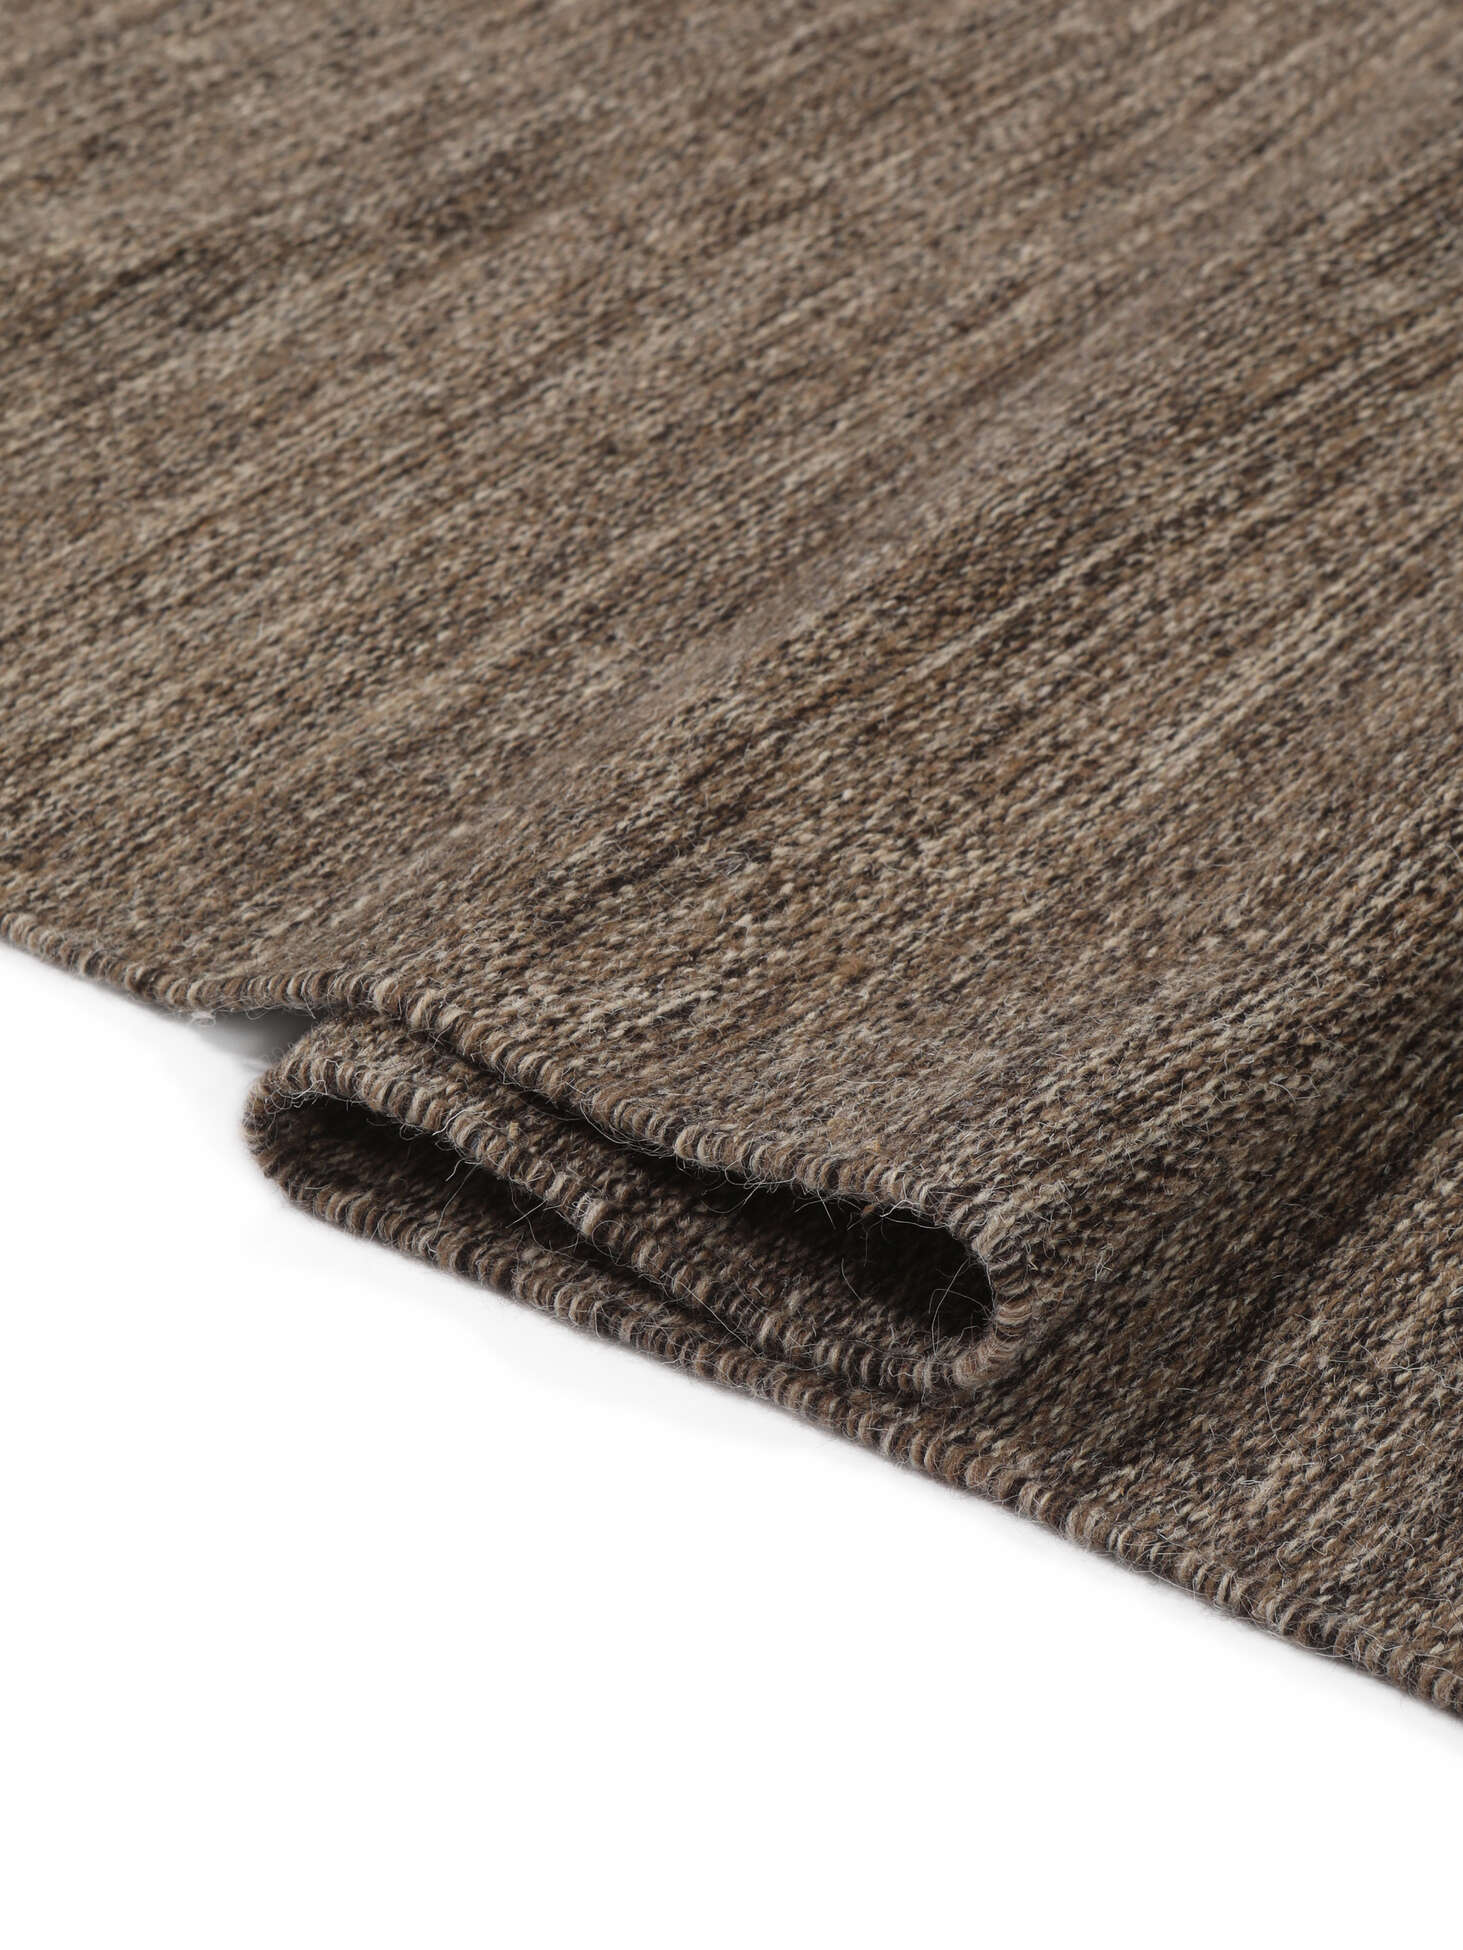 Dames line - tapis damier - marron et gris 080 x 250 cm